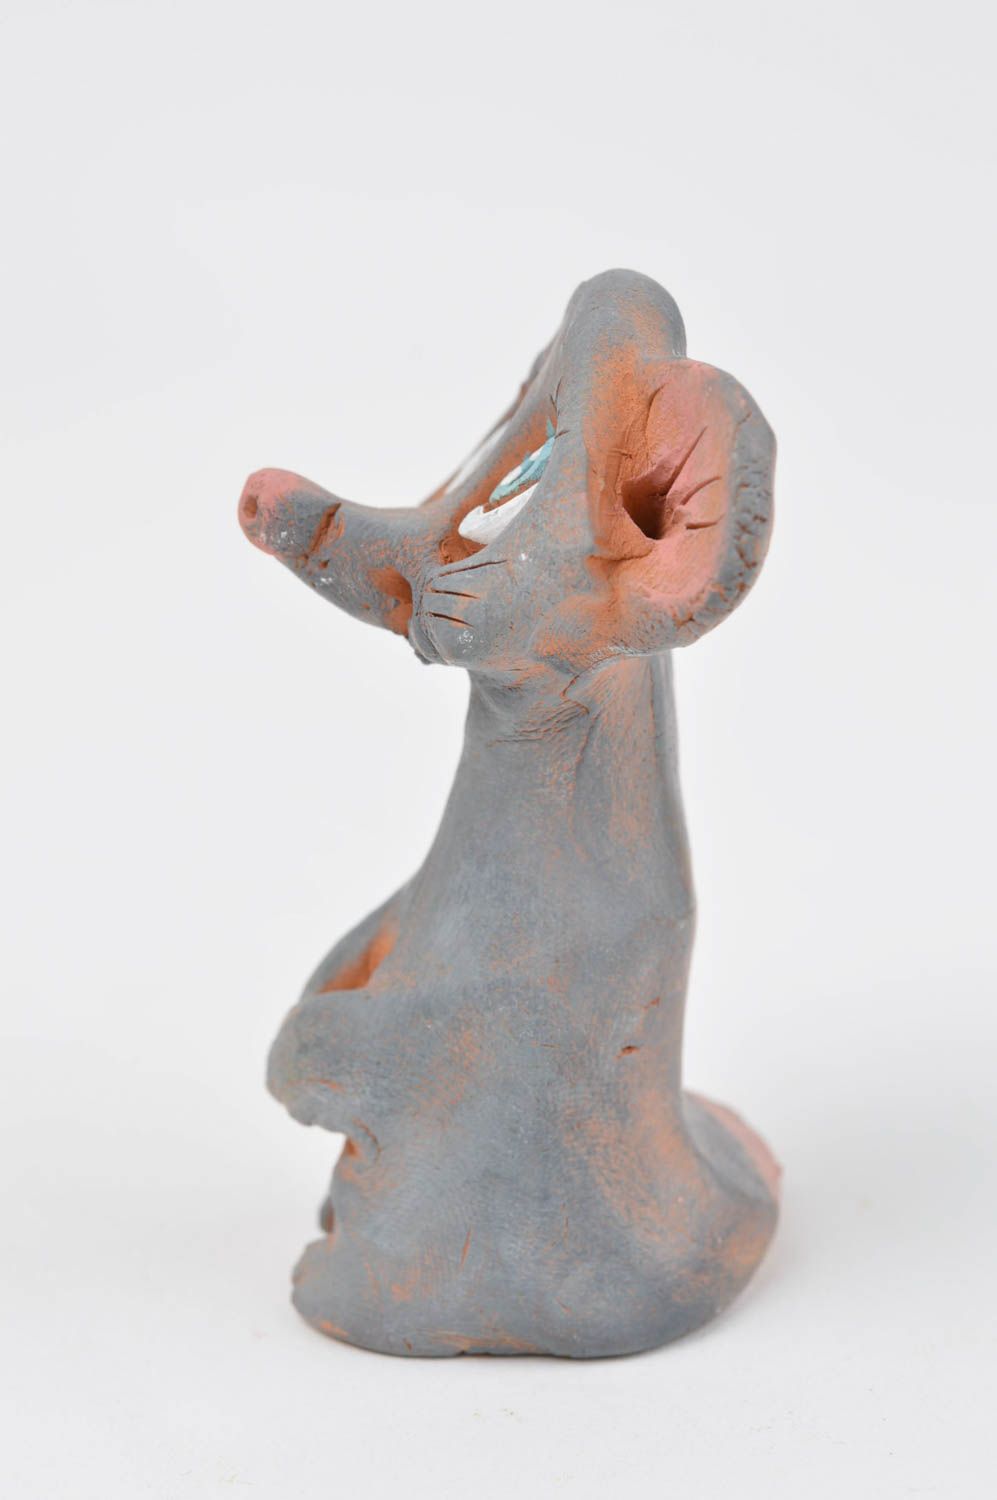 Статуэтка животного мышки ручной работы статуэтка для декора фигурка из глины фото 3